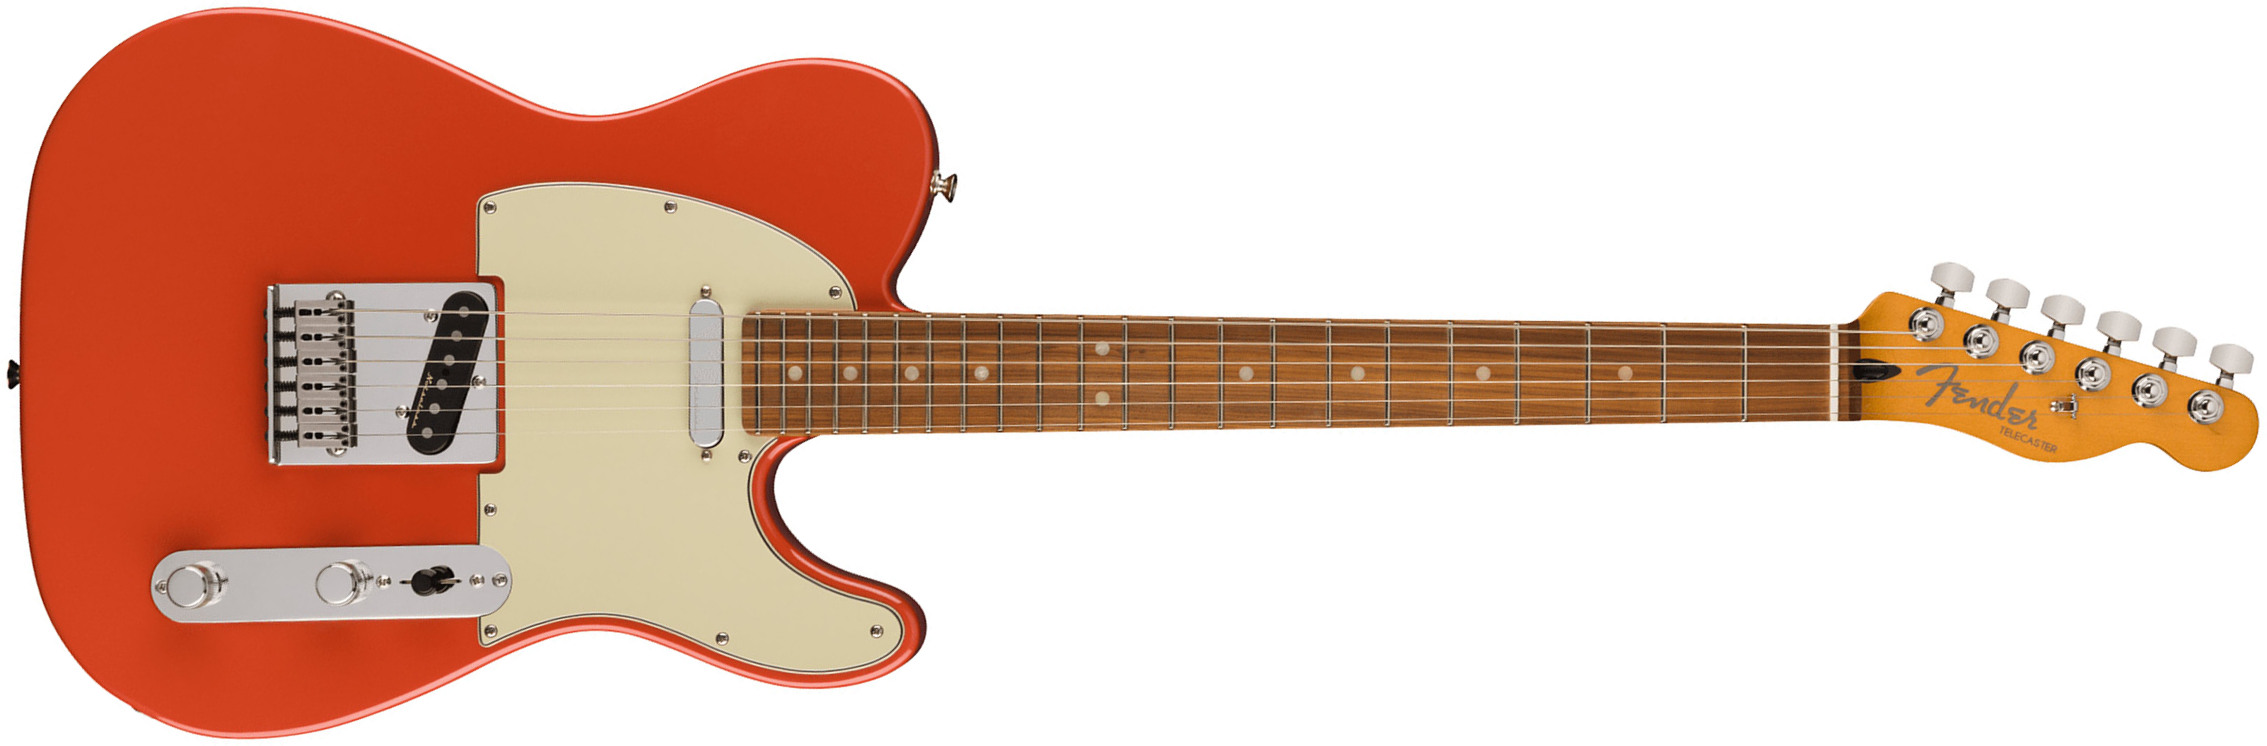 Fender Tele Player Plus Mex 2023 2s Ht Pf - Fiesta Red - Televorm elektrische gitaar - Main picture